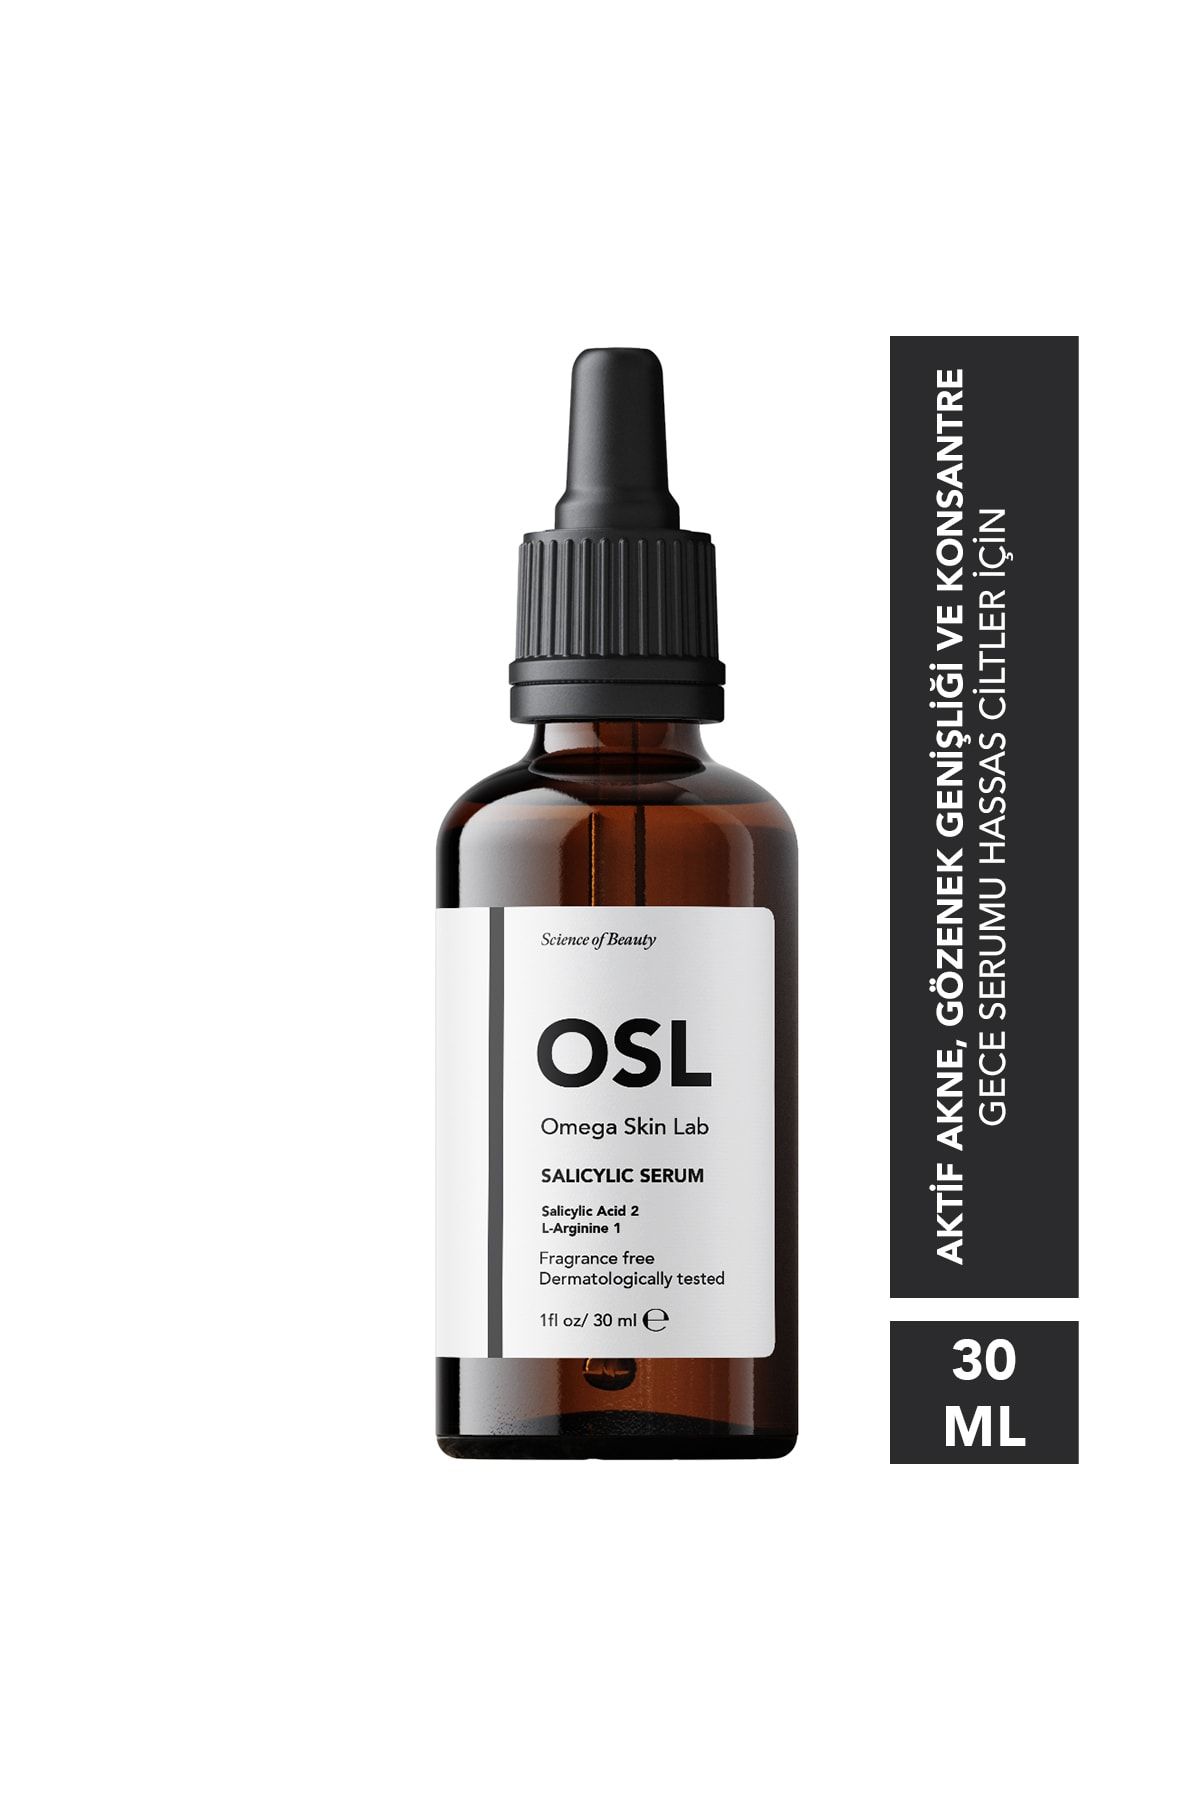 OSL Omega Skin Lab Omega Skin Lab Salicylic Serum 30ml (YAĞLI/KARMA CİLTLER İÇİN GÖZENEK SERUMU)